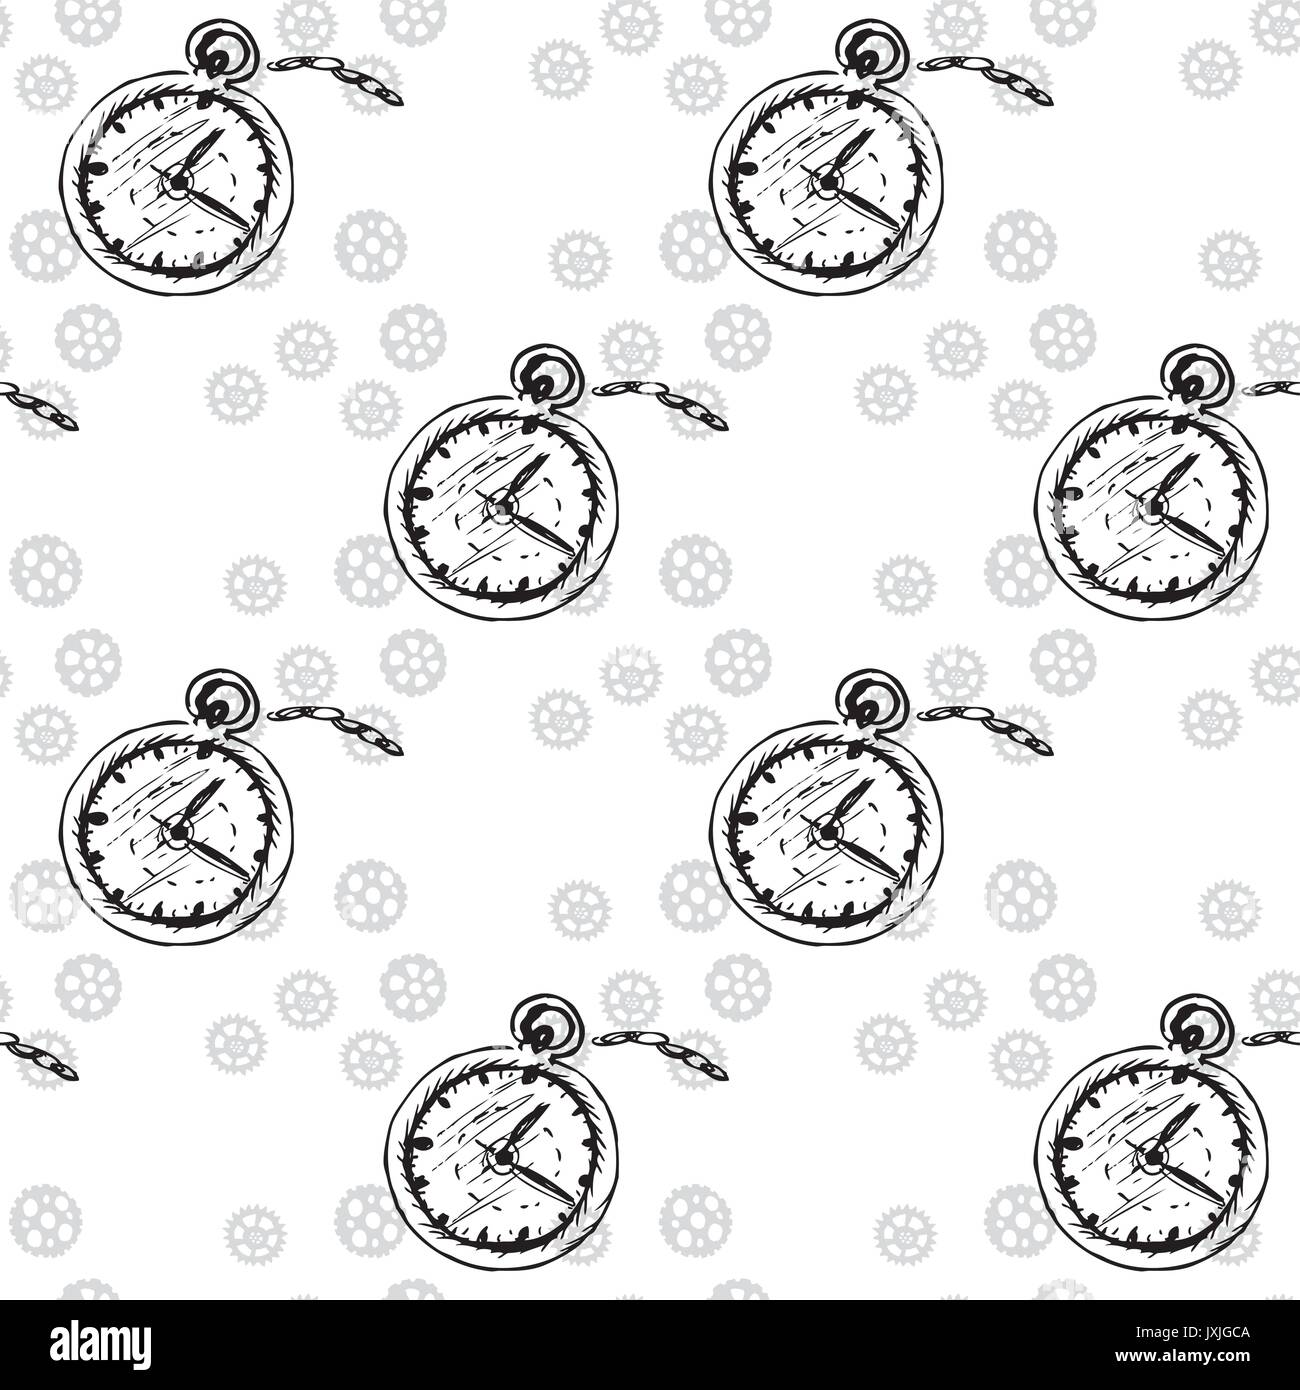 Uhren nahtlose Muster mit Taschenuhren und Zahnräder, Vektor Stock Vektor